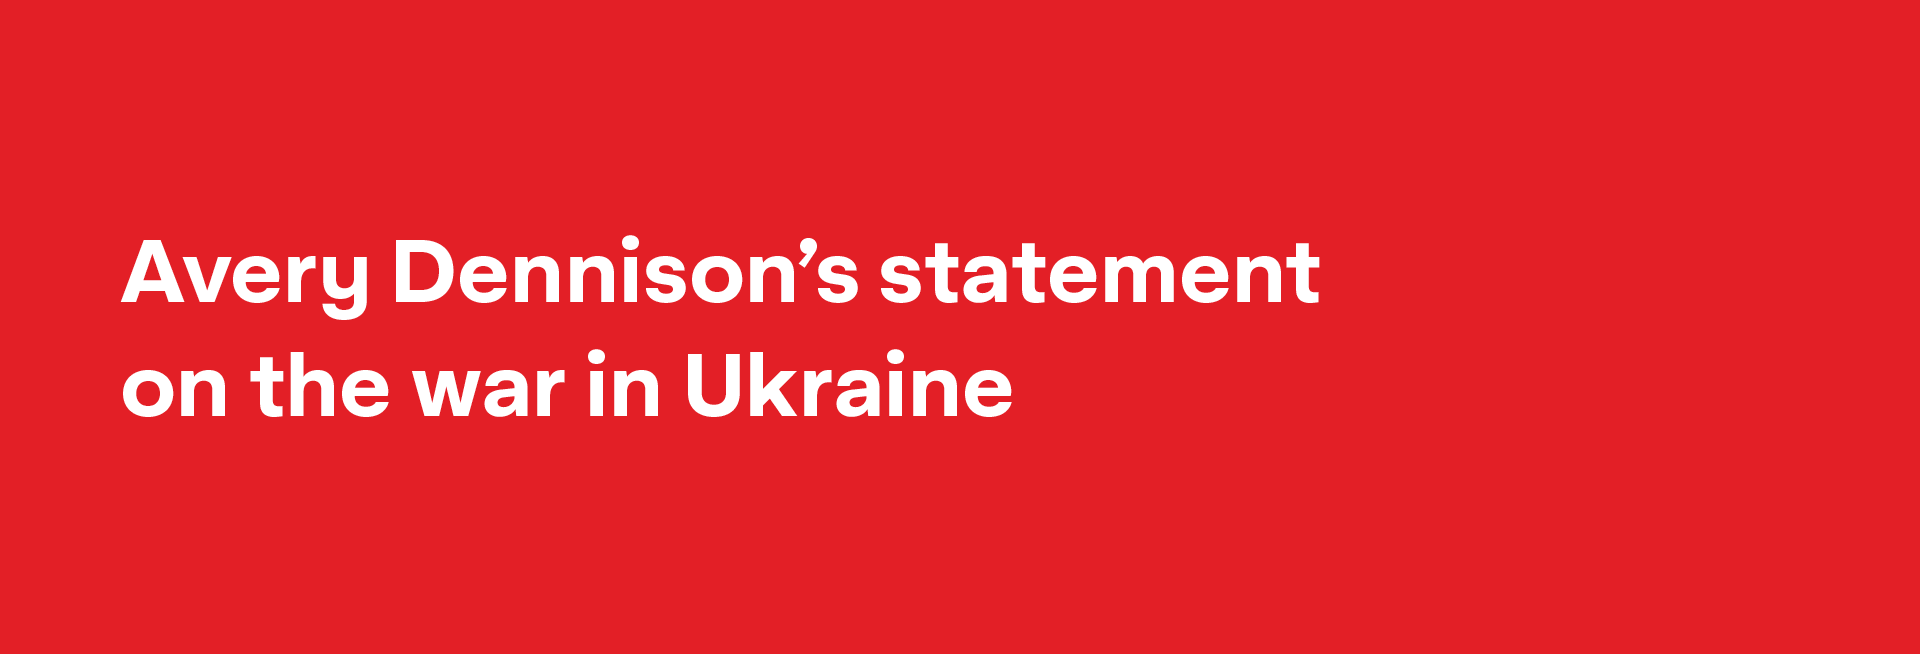 Avery Dennison's statement on the war in Ukraine